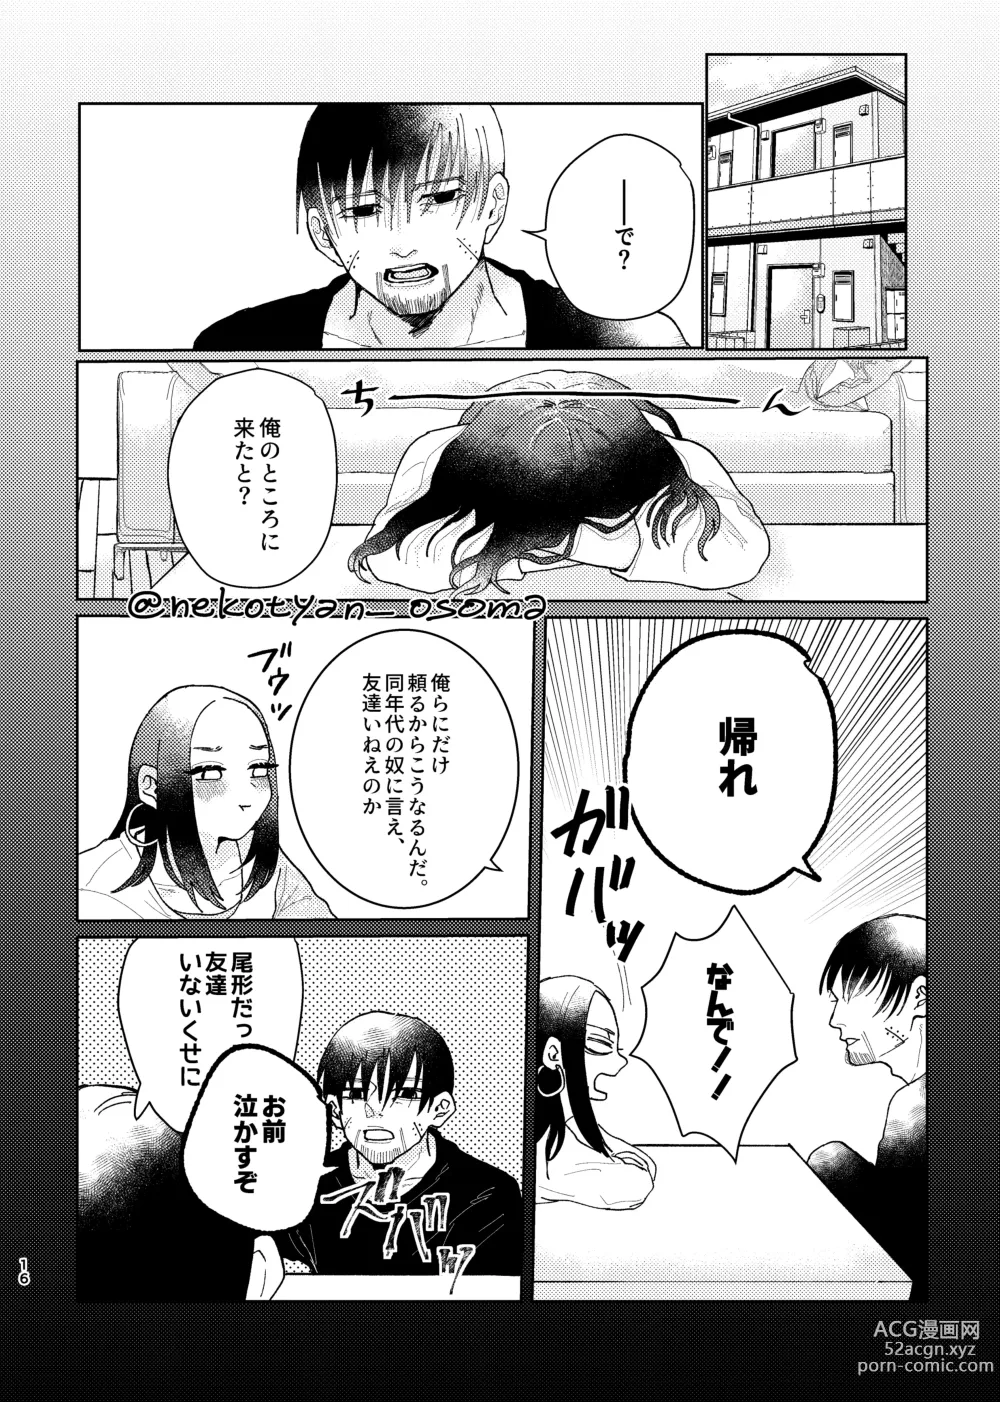 Page 15 of doujinshi Shoujo ga Hana o Sakasu made